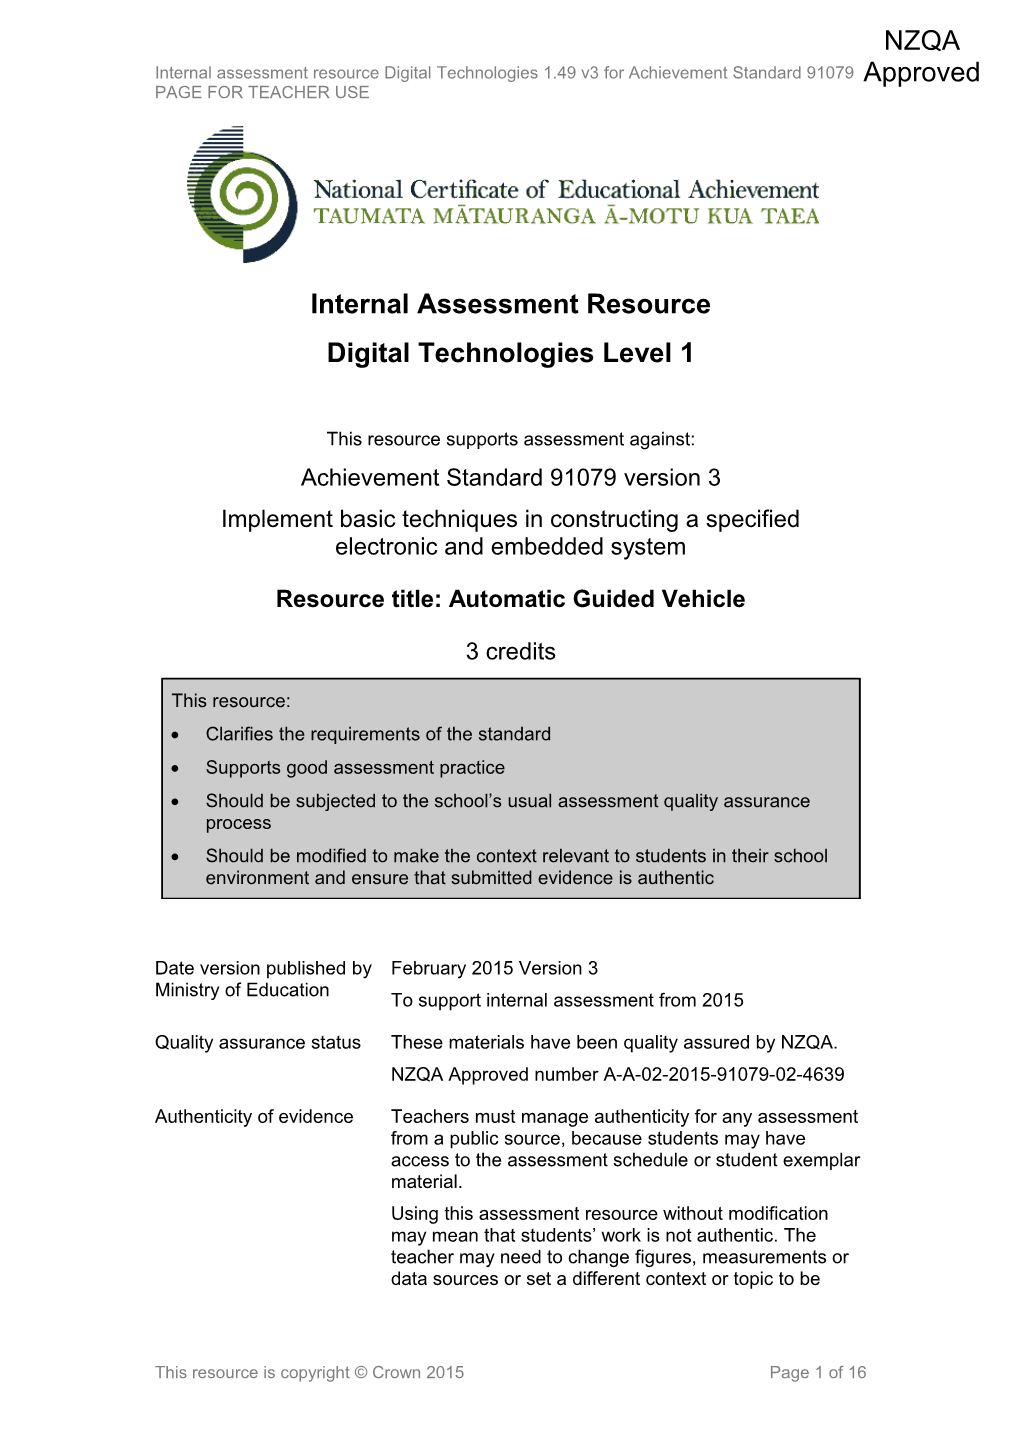 Level 1 Digital Technologies Internal Assessment Resource